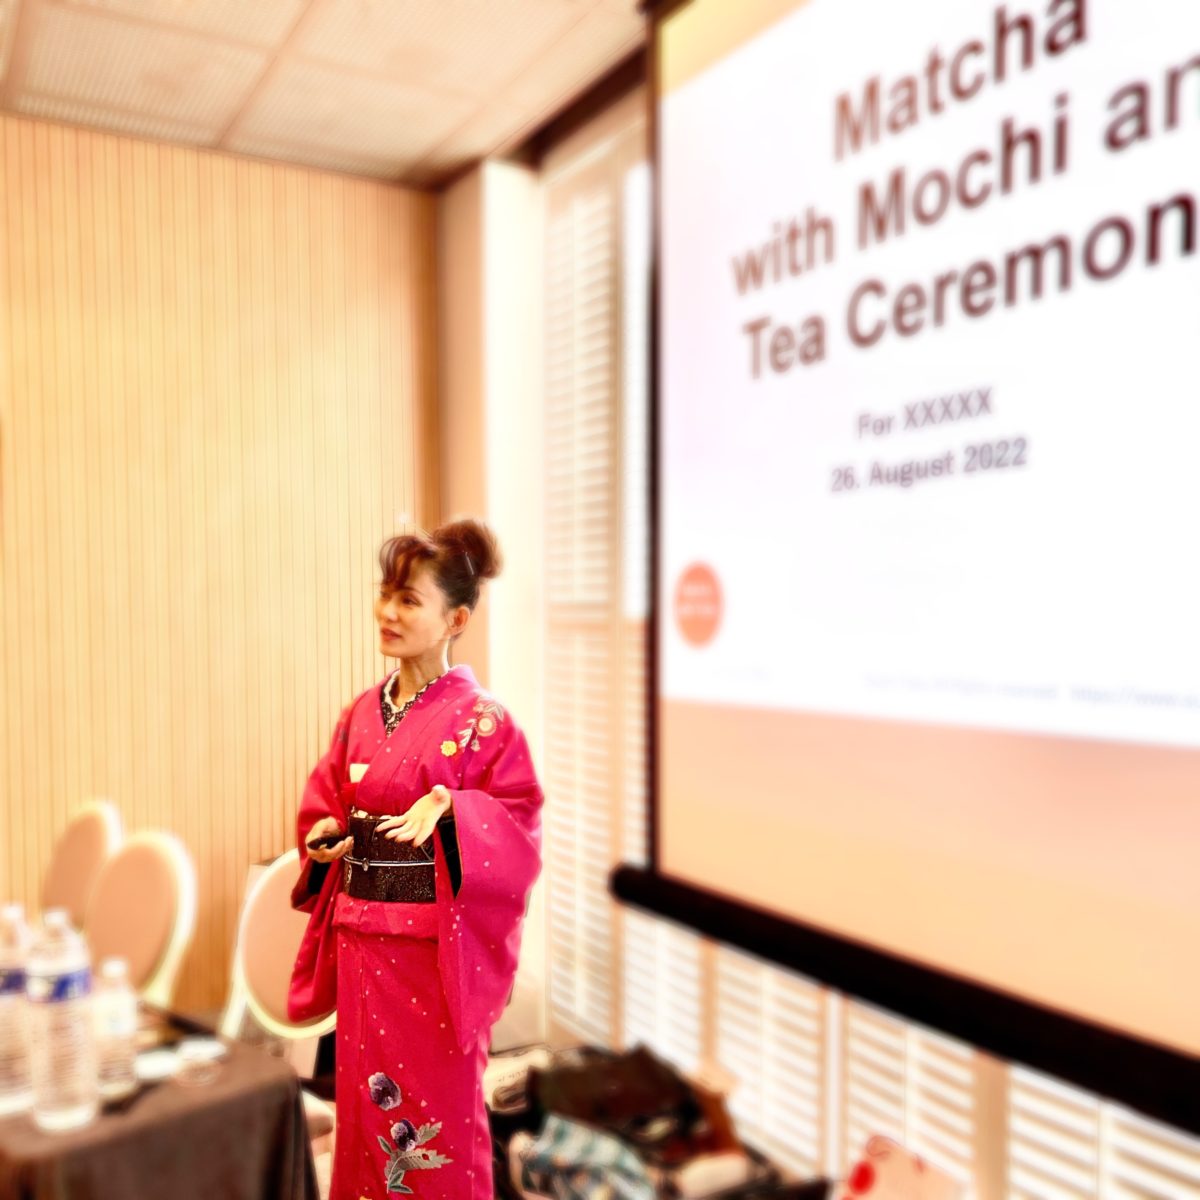 Matcha-Seminar und Teezeremonie an einem Tisch in Paris